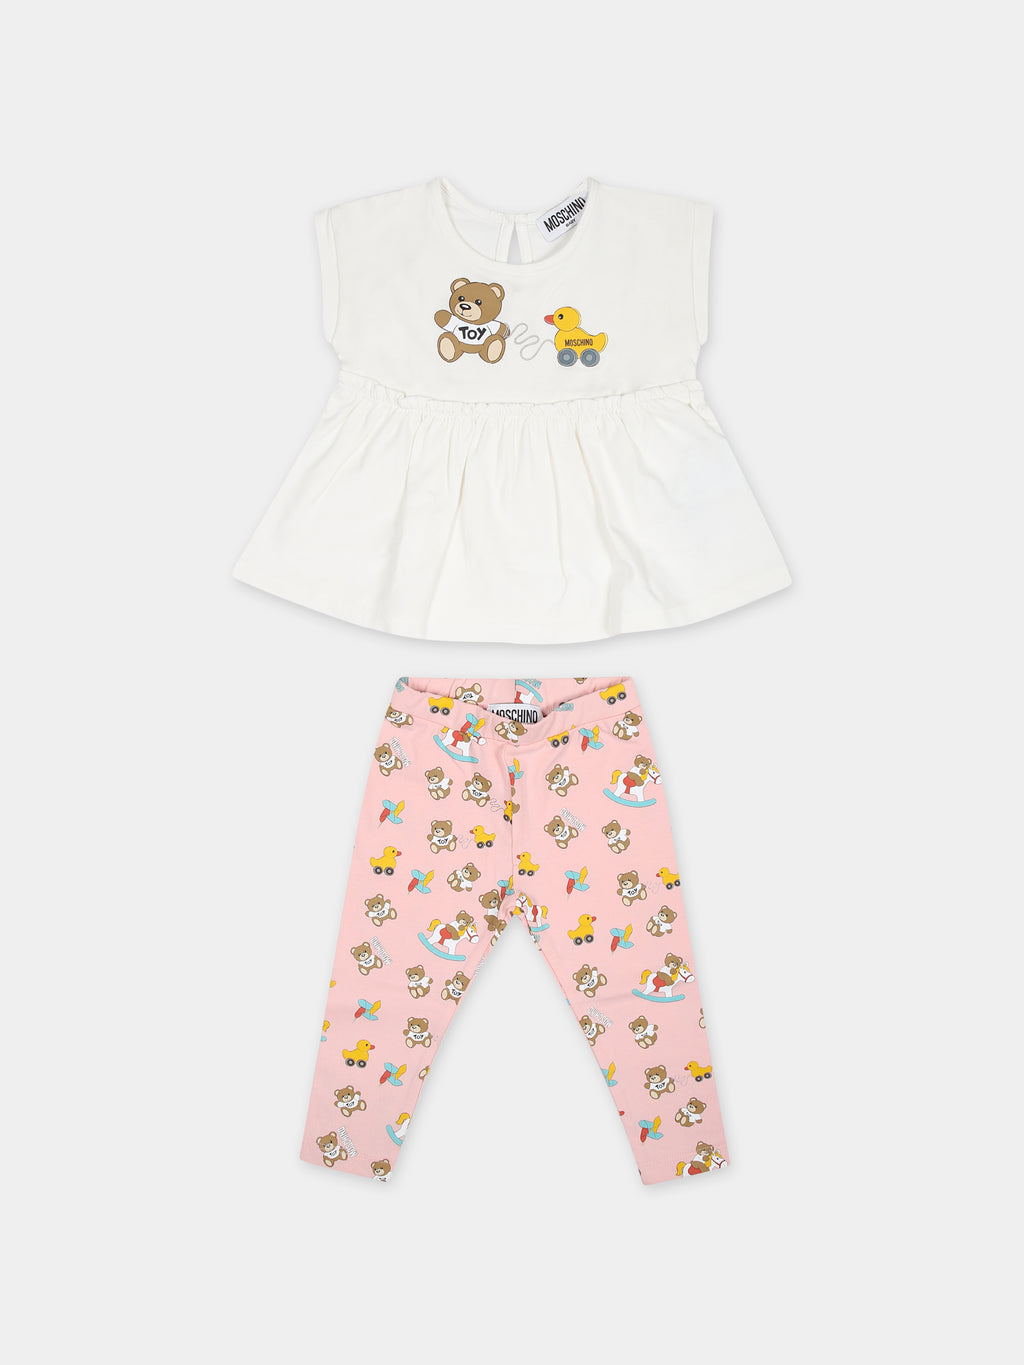 Completo multicolor per neonata con Teddy Bear e paperelle